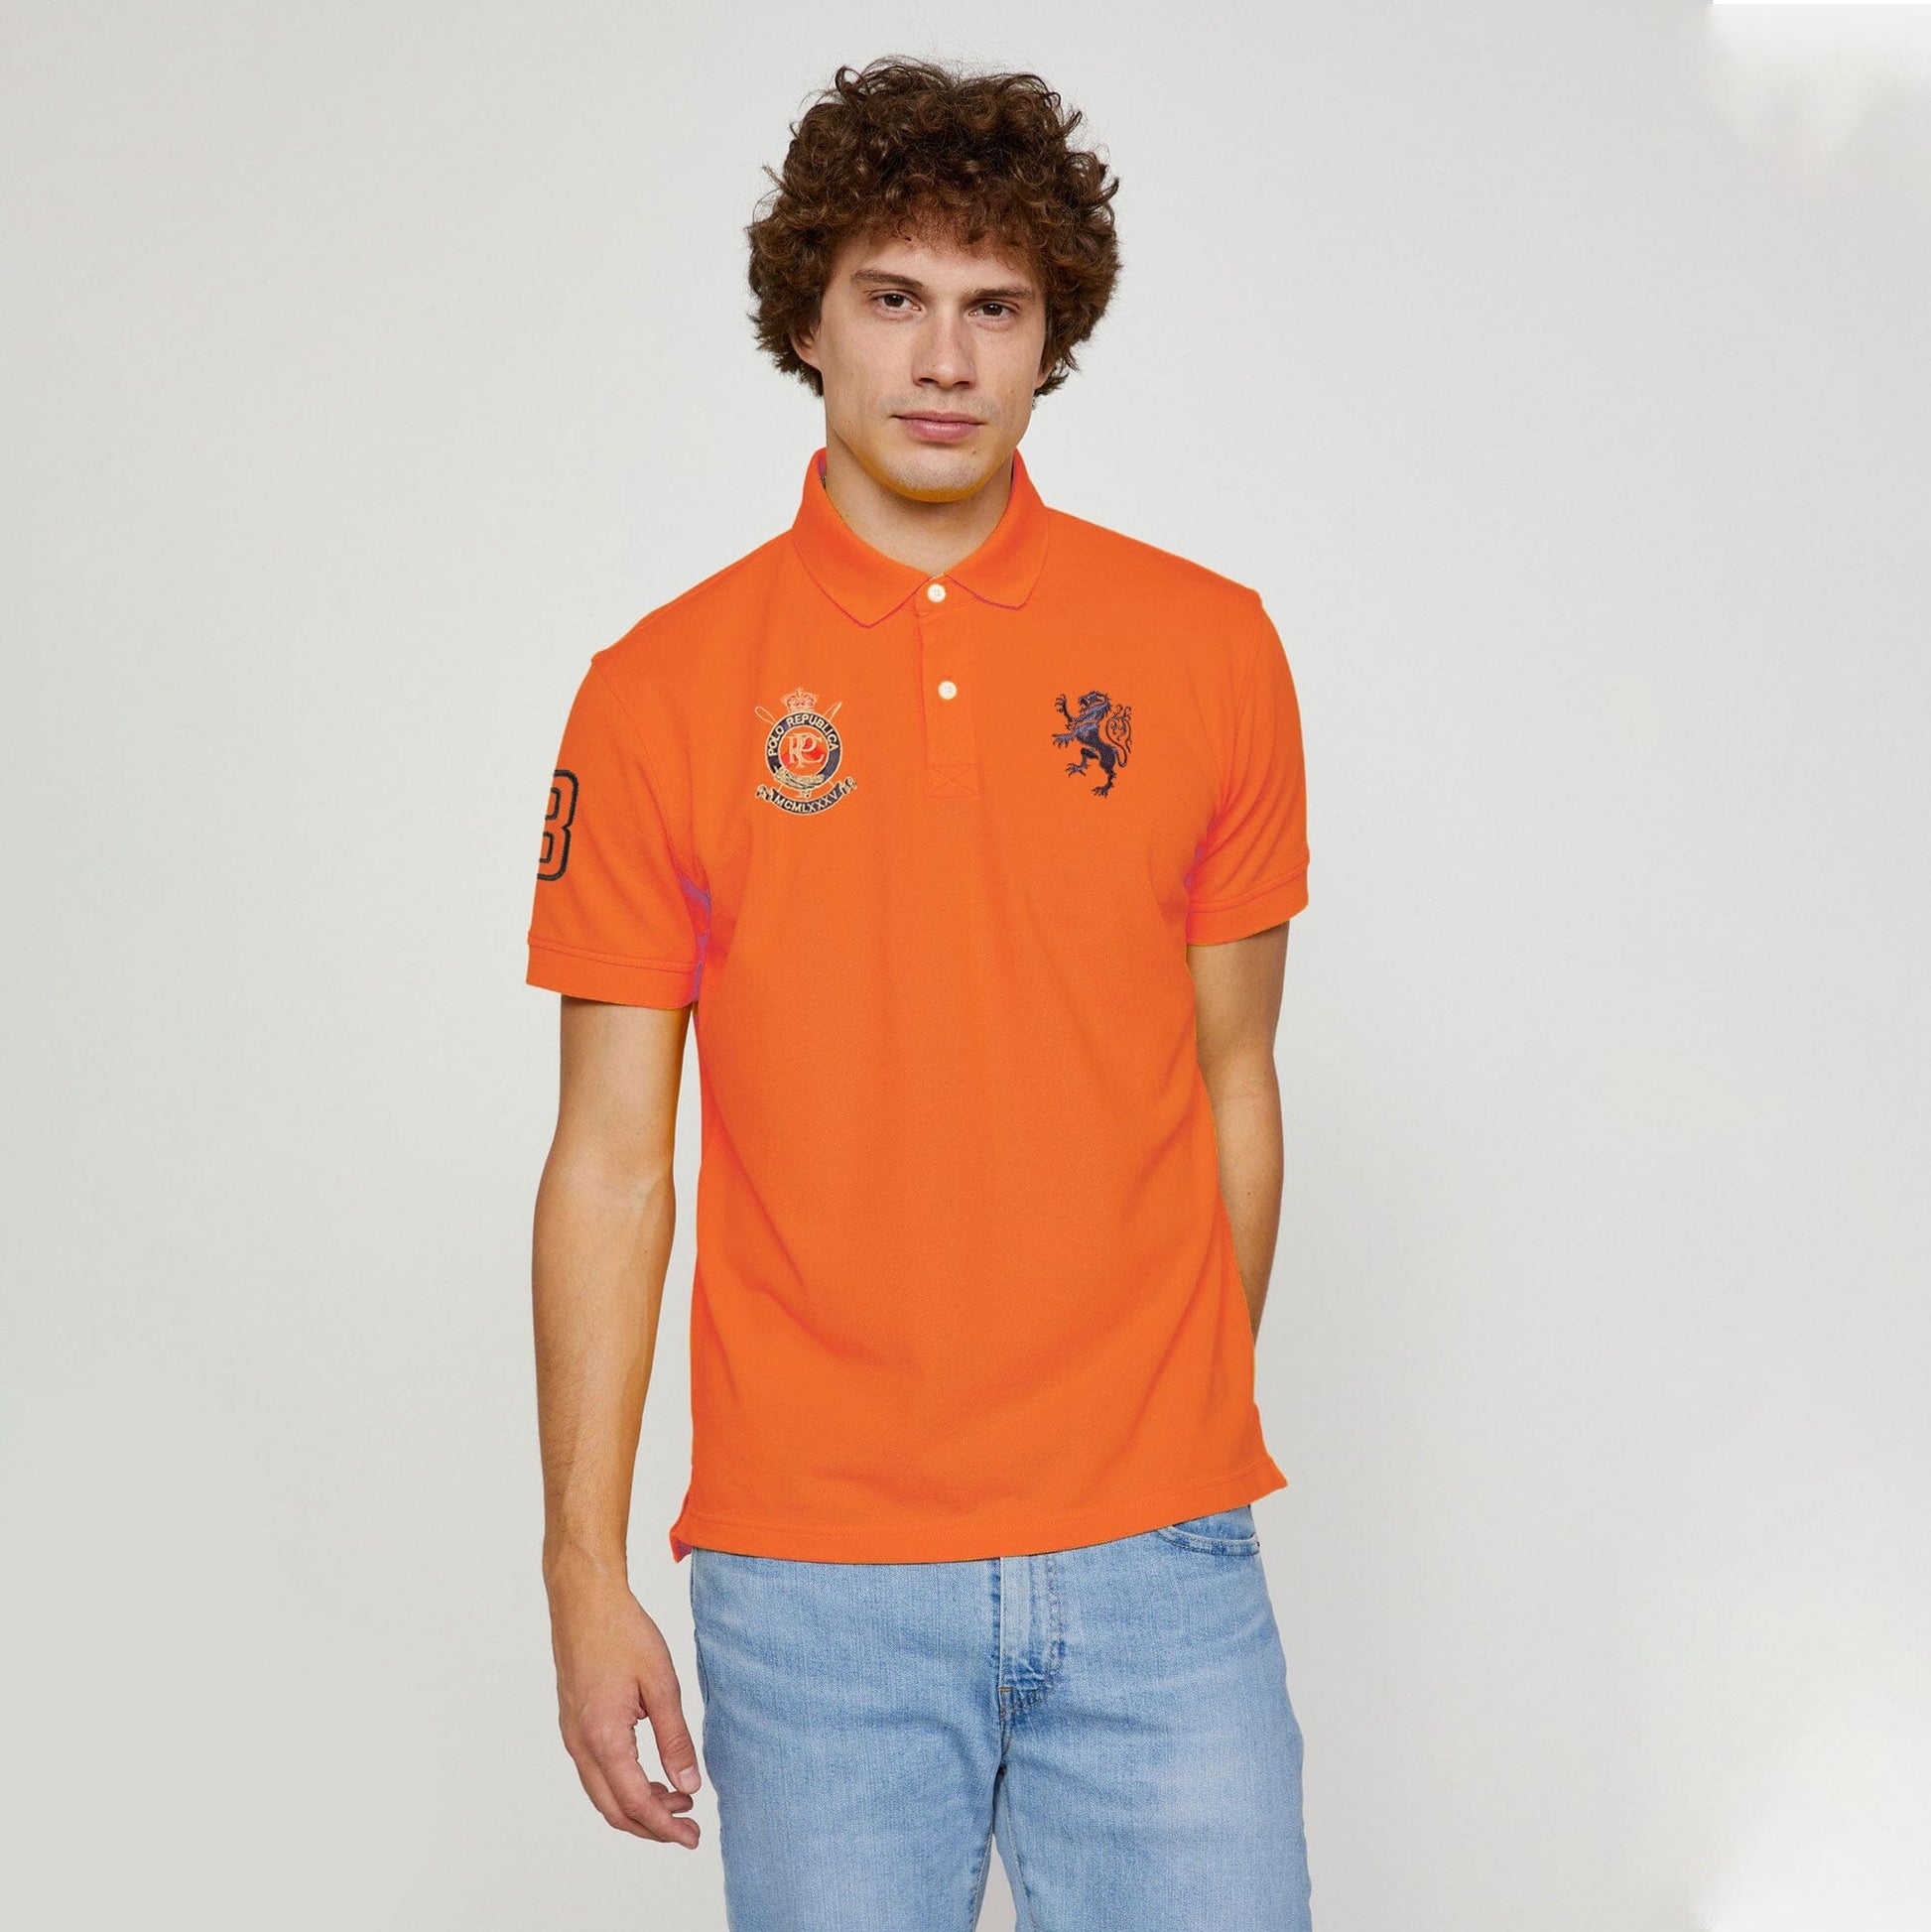 Polo Republica Men's Lion PR Crest & 8 Embroidered Short Sleeve Polo Shirt Men's Polo Shirt Polo Republica Orange S 